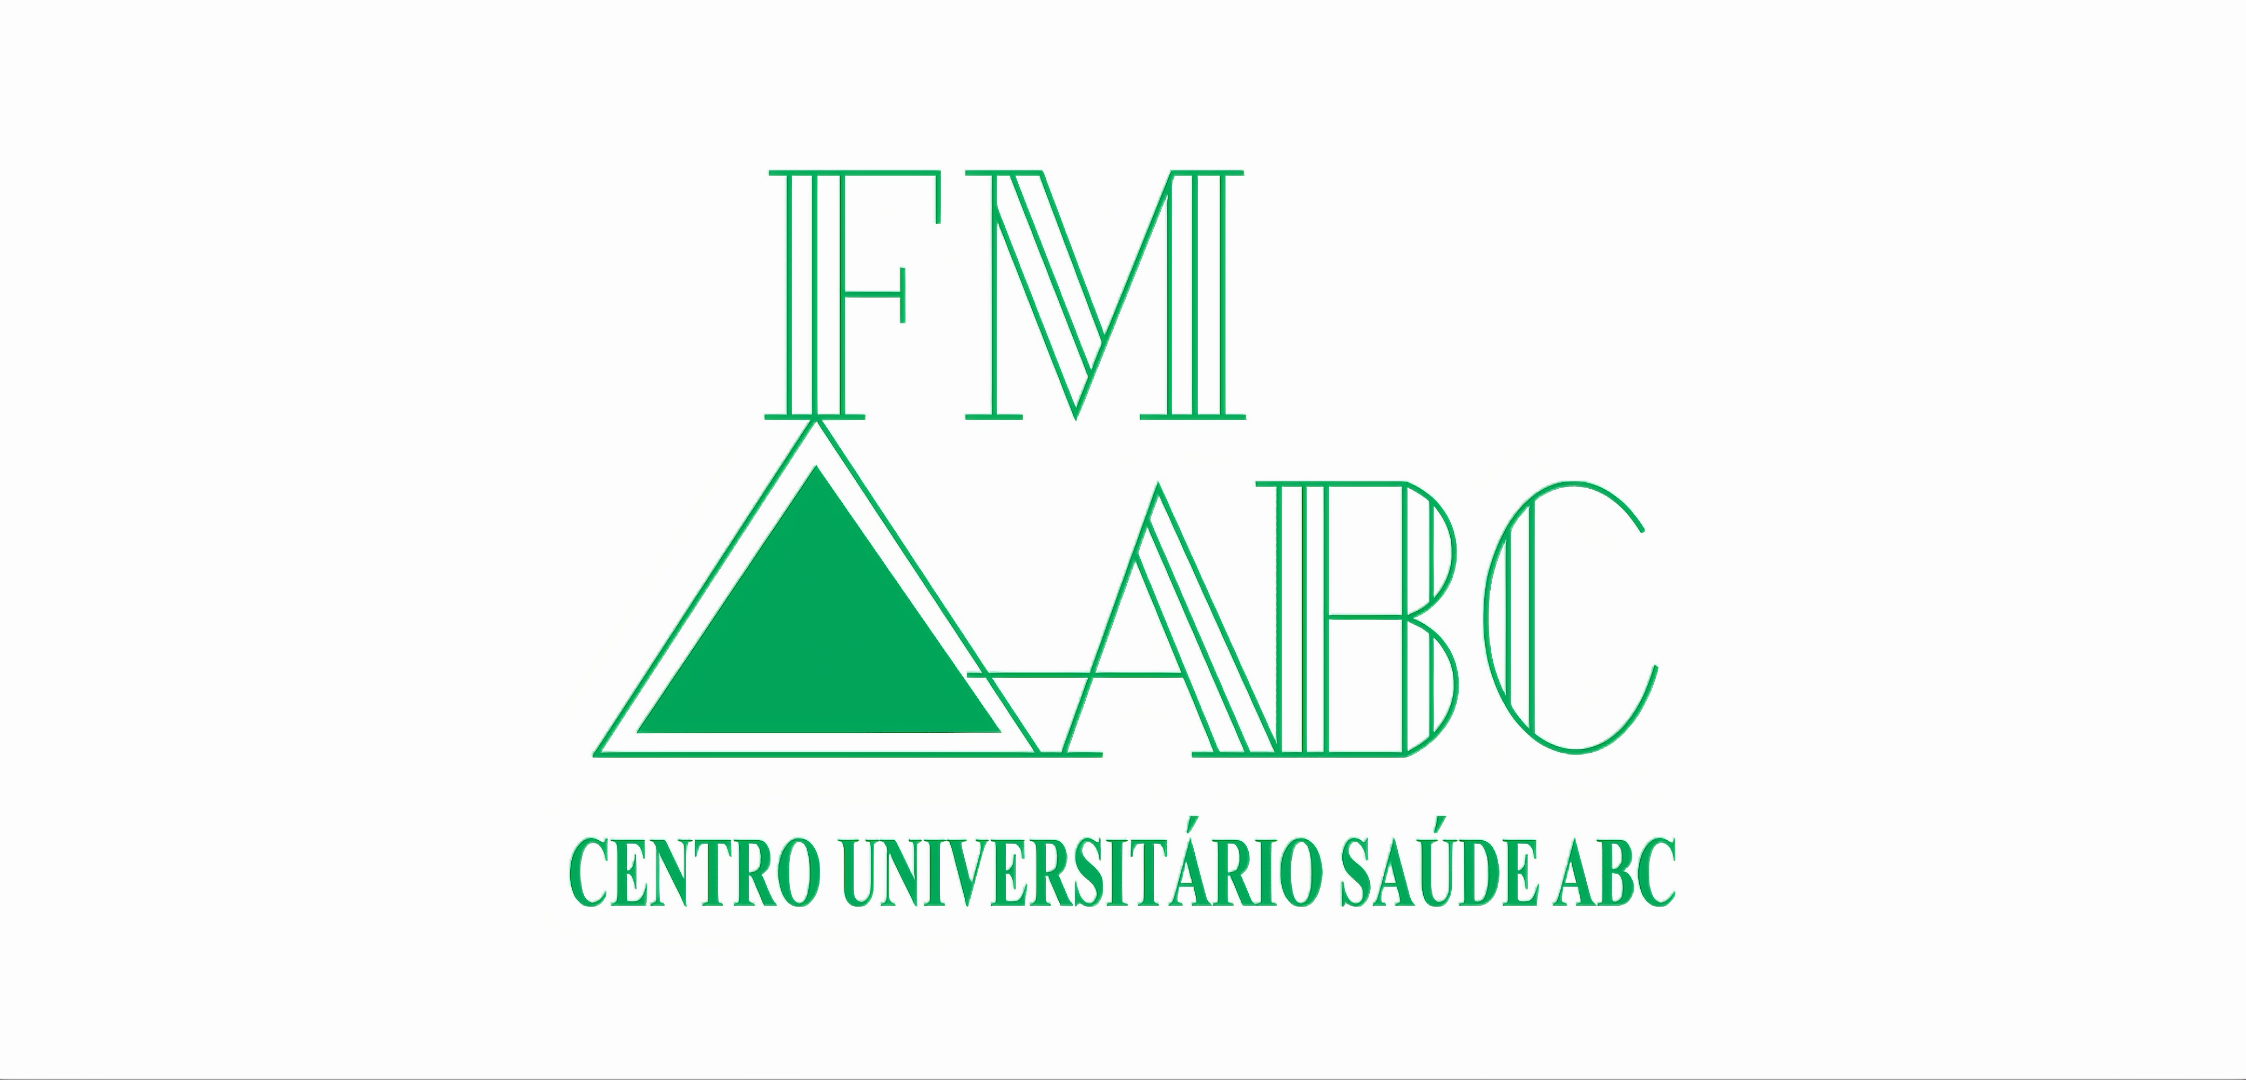 Logotipo do Centro Universitário Saúde ABC apresentando a sigla “med abc” com triângulo verde e texto abaixo.